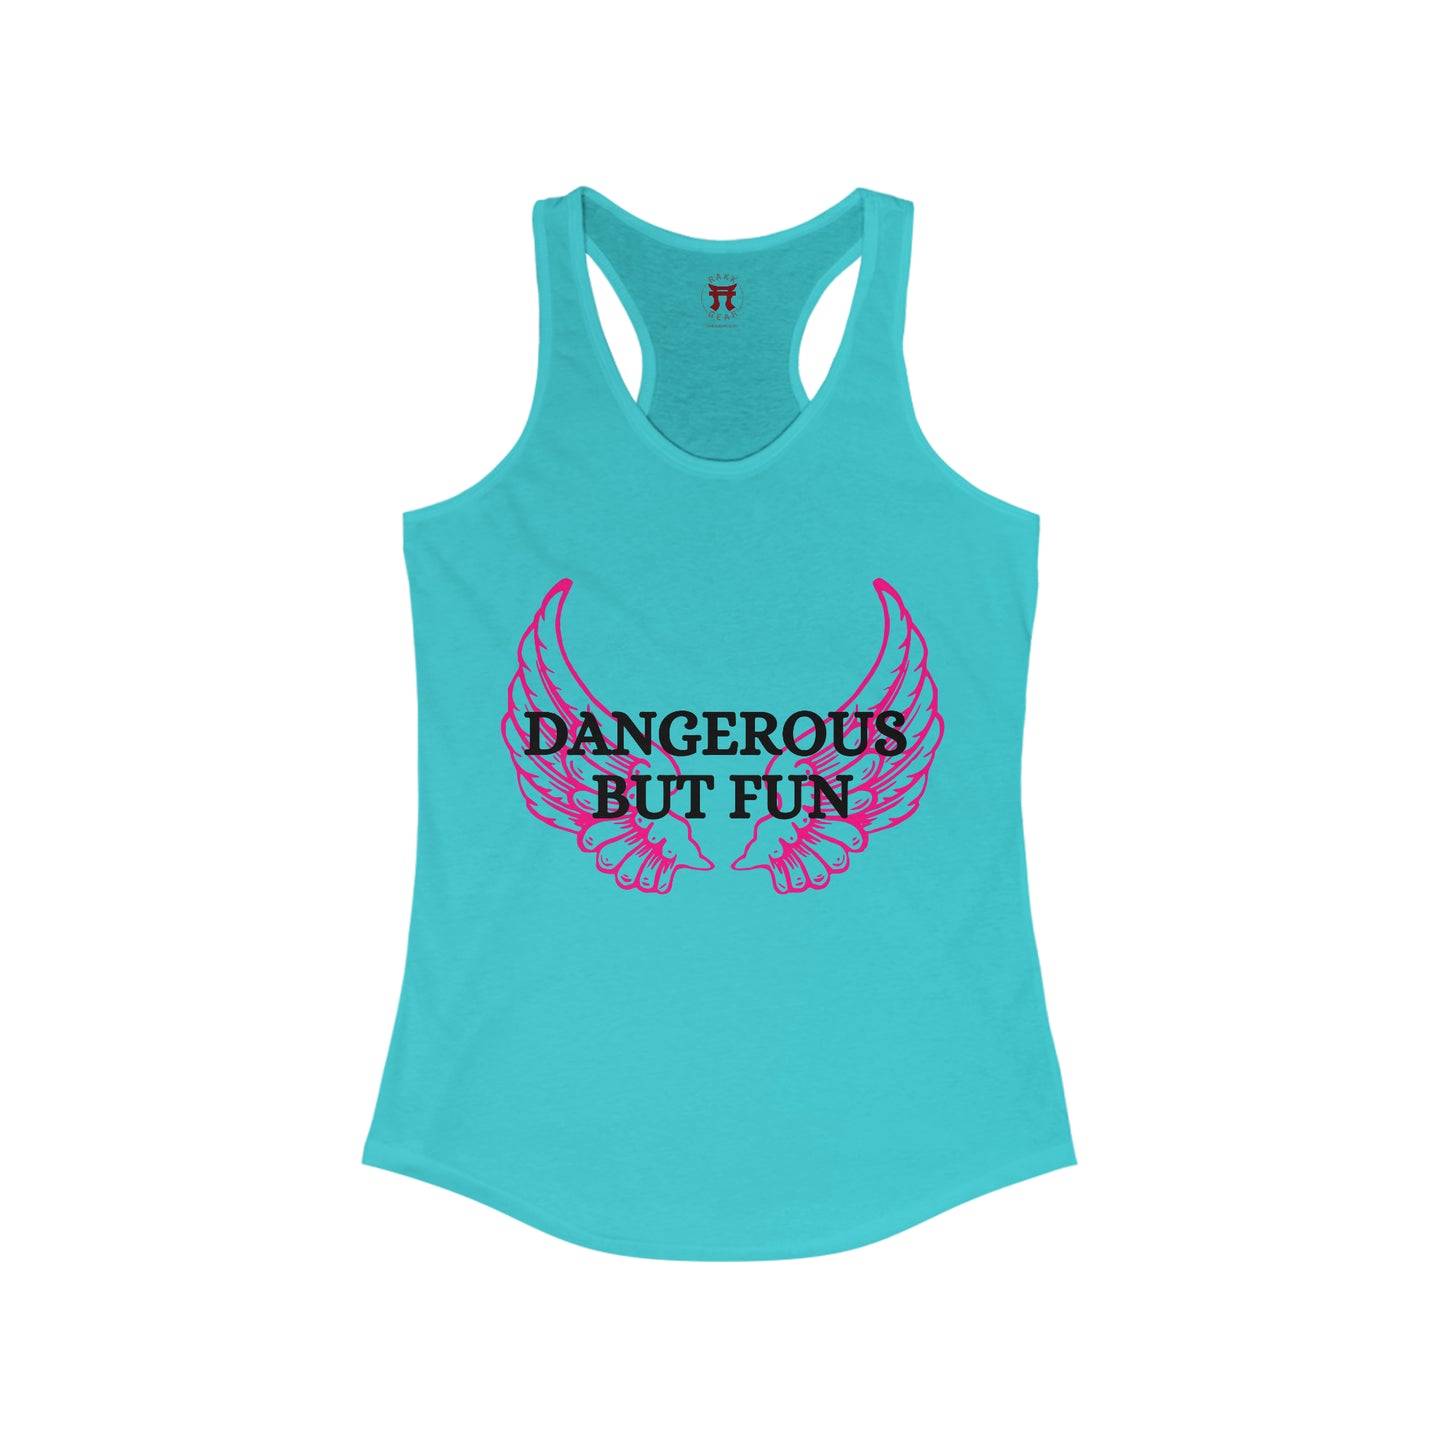 Rakkgear Women's Dangerous But Fun Tank Top in turquoise